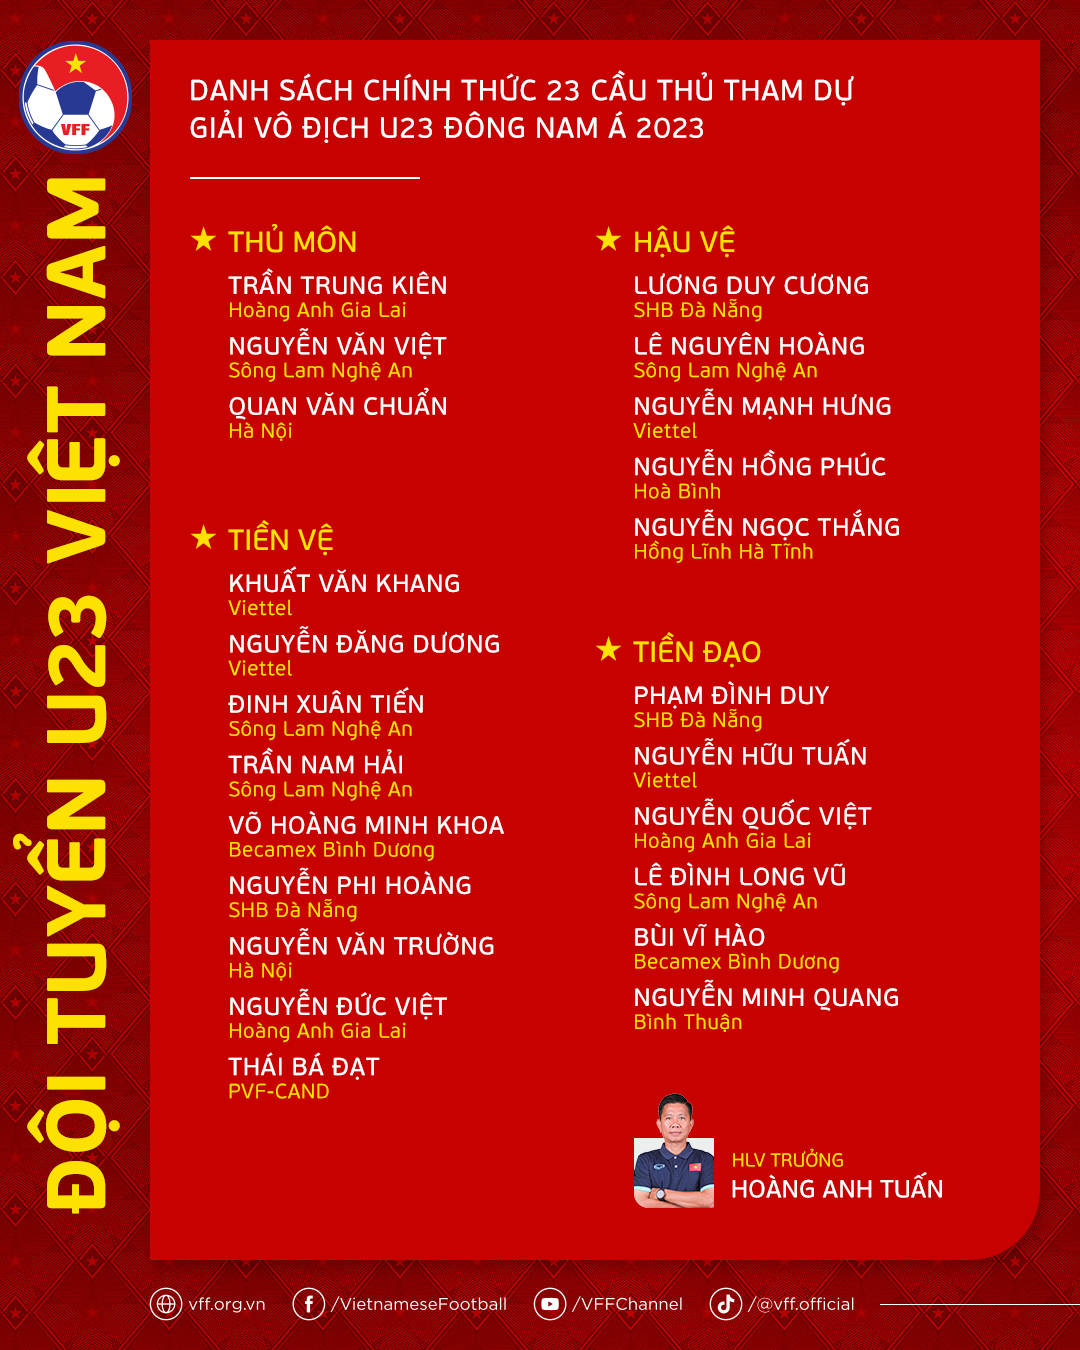 HLV Hoàng Anh Tuấn chốt danh sách U23 Việt Nam dự giải Đông Nam Á - Bóng Đá